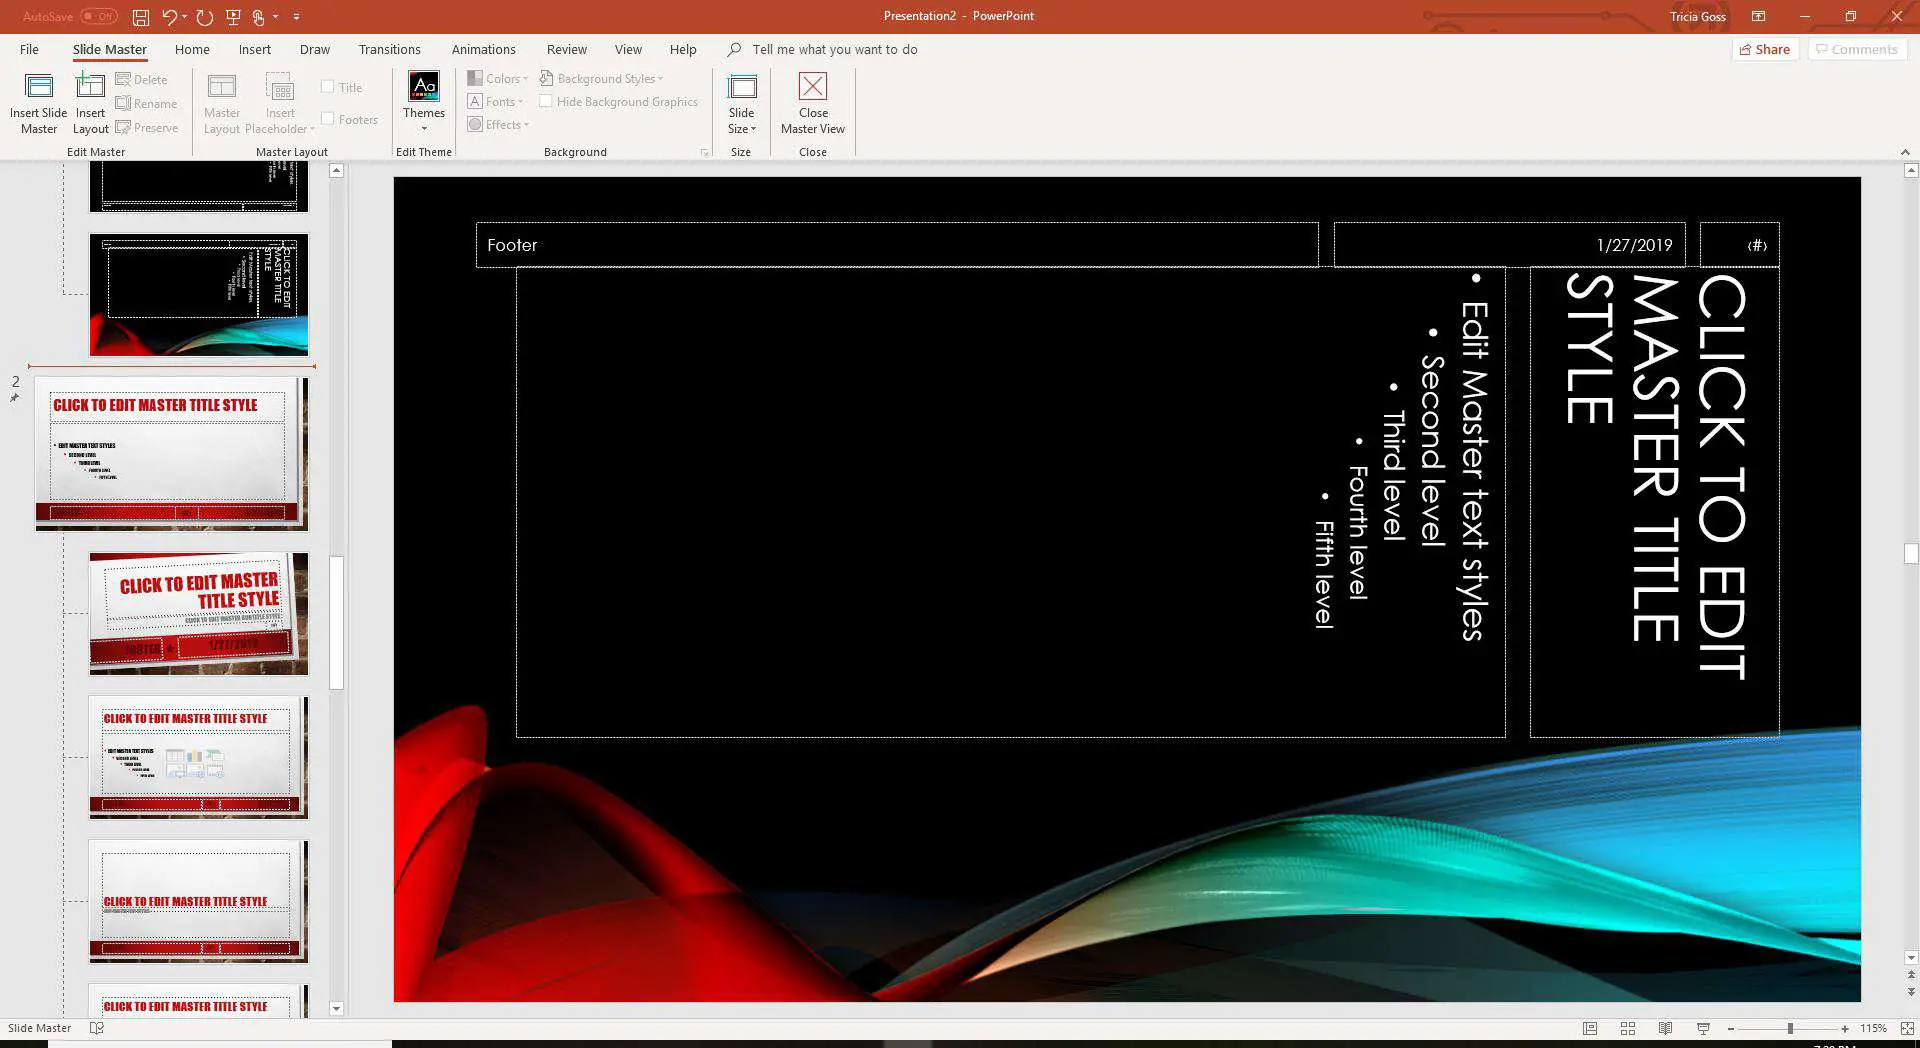 Captura de tela do segundo tema adicionado ao segundo slide mestre